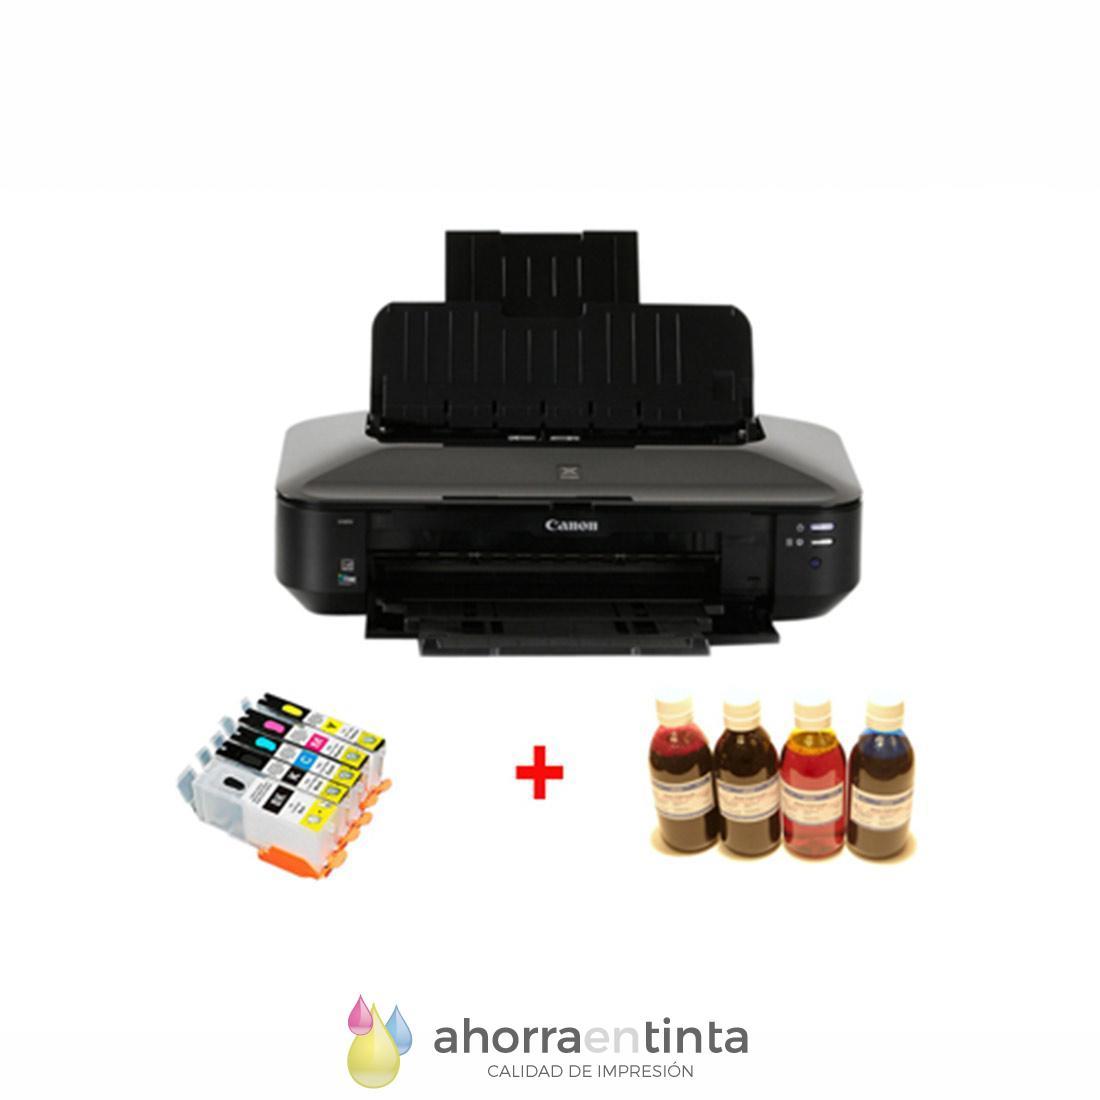 Pack Impresora A3 Canon Pixma IX6850 + 5 cartuchos recargables + 4